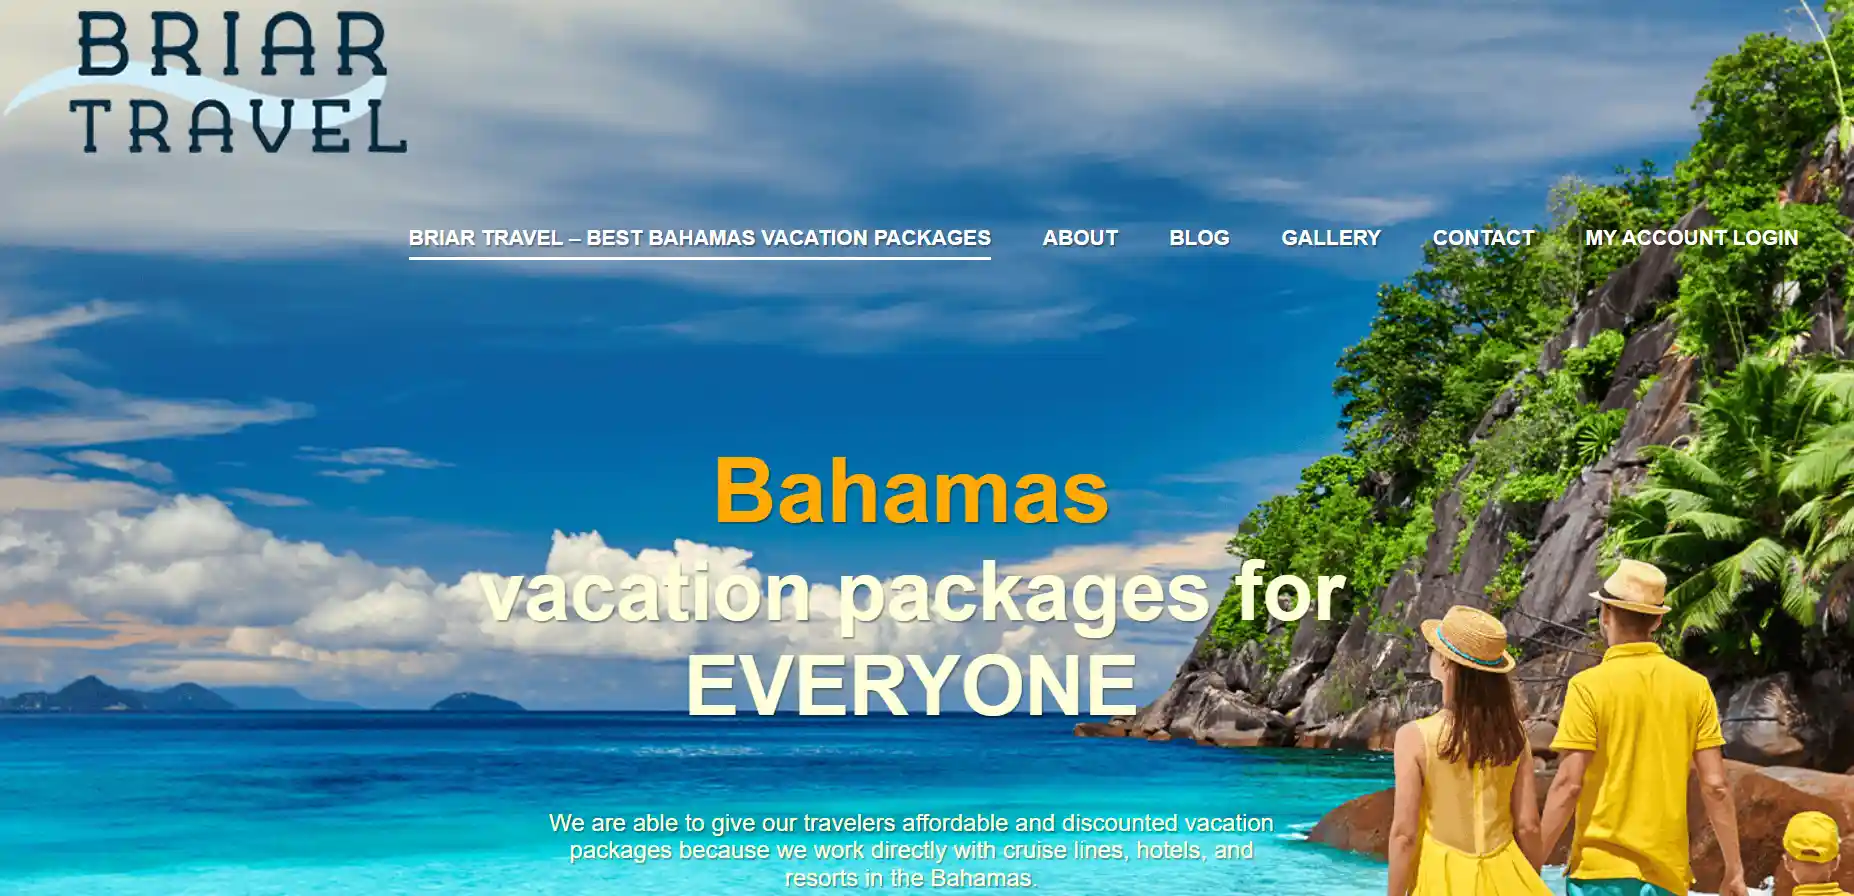 briar travel bahamas trip